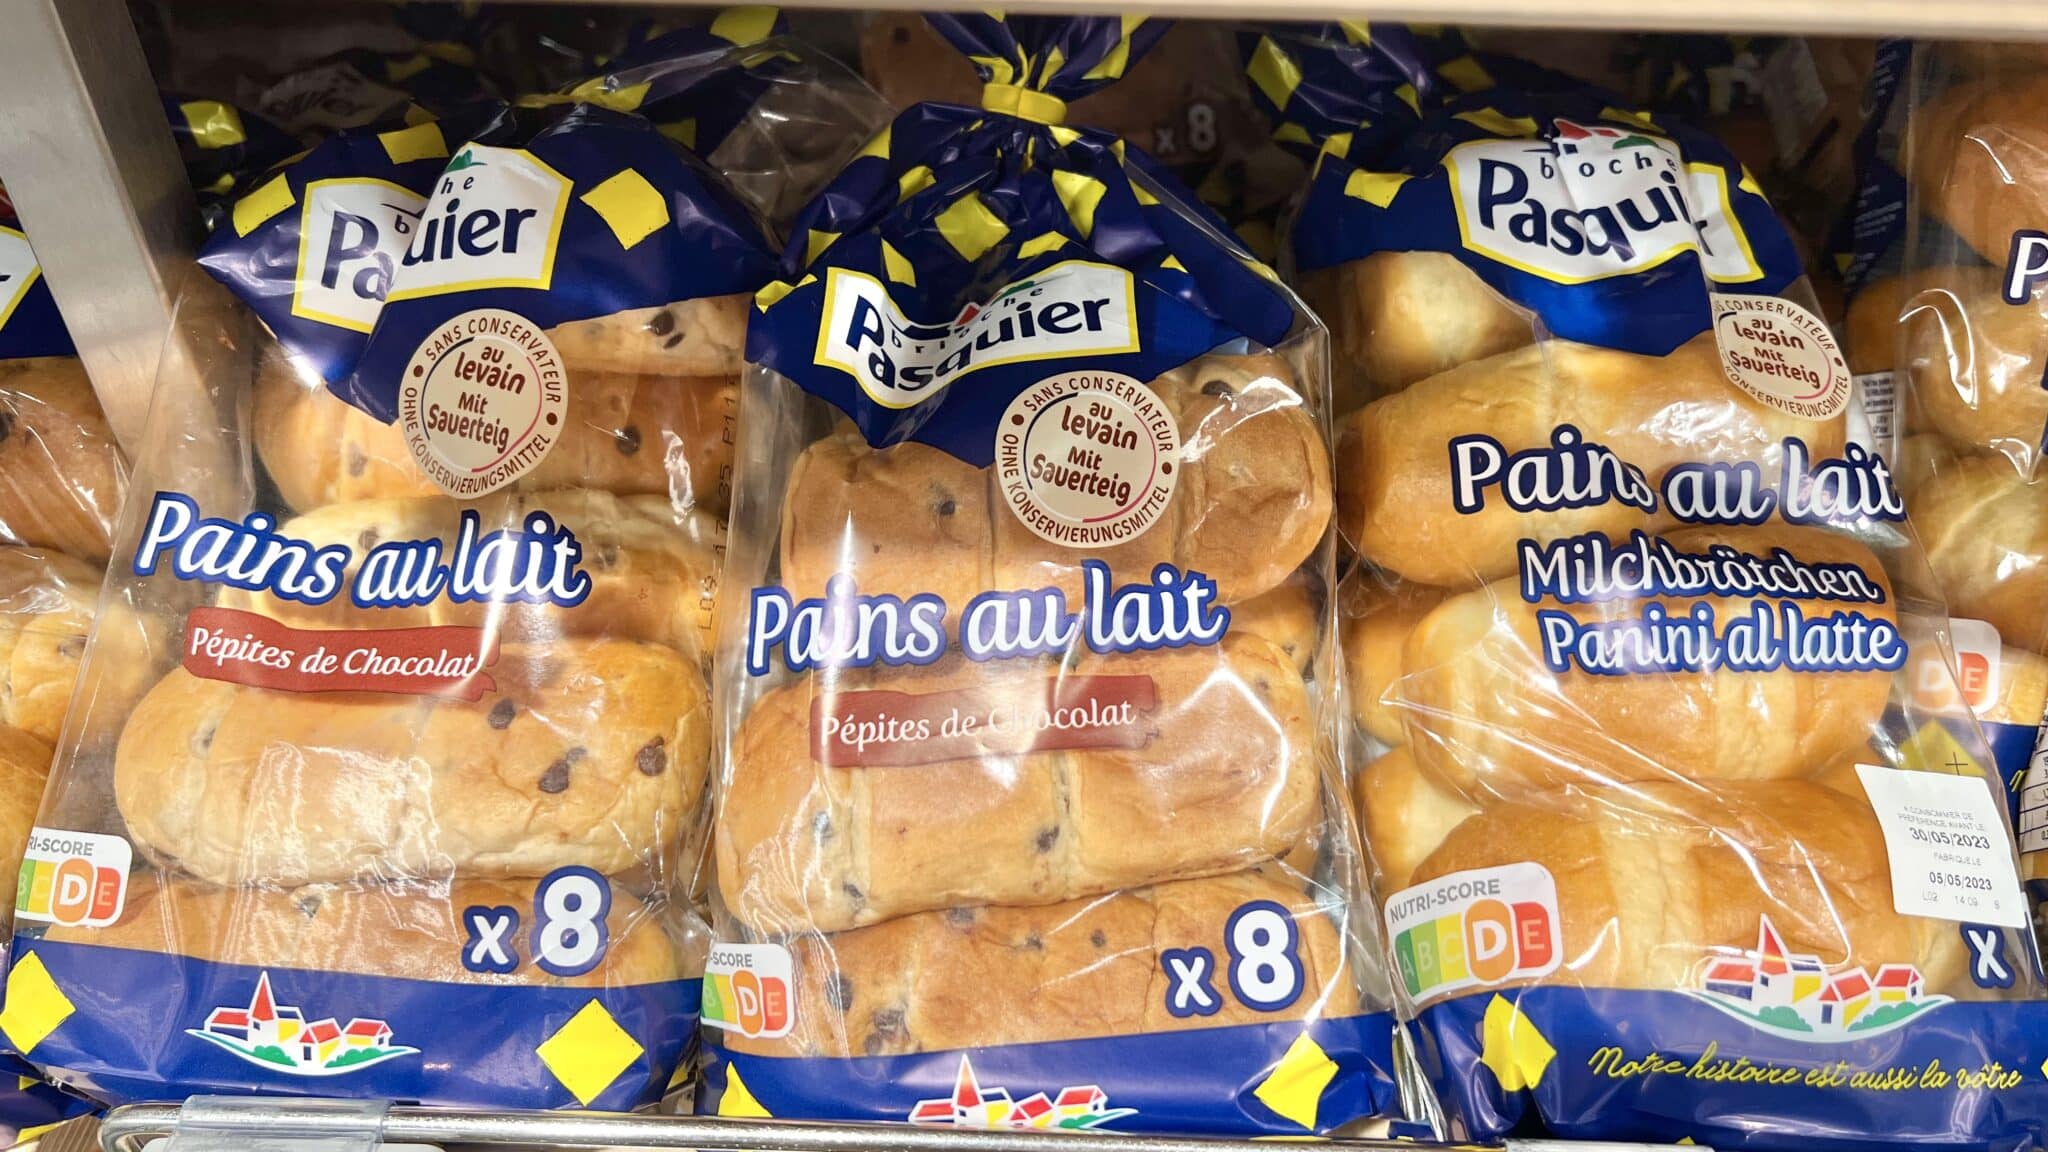 pains au lait at the supermarket